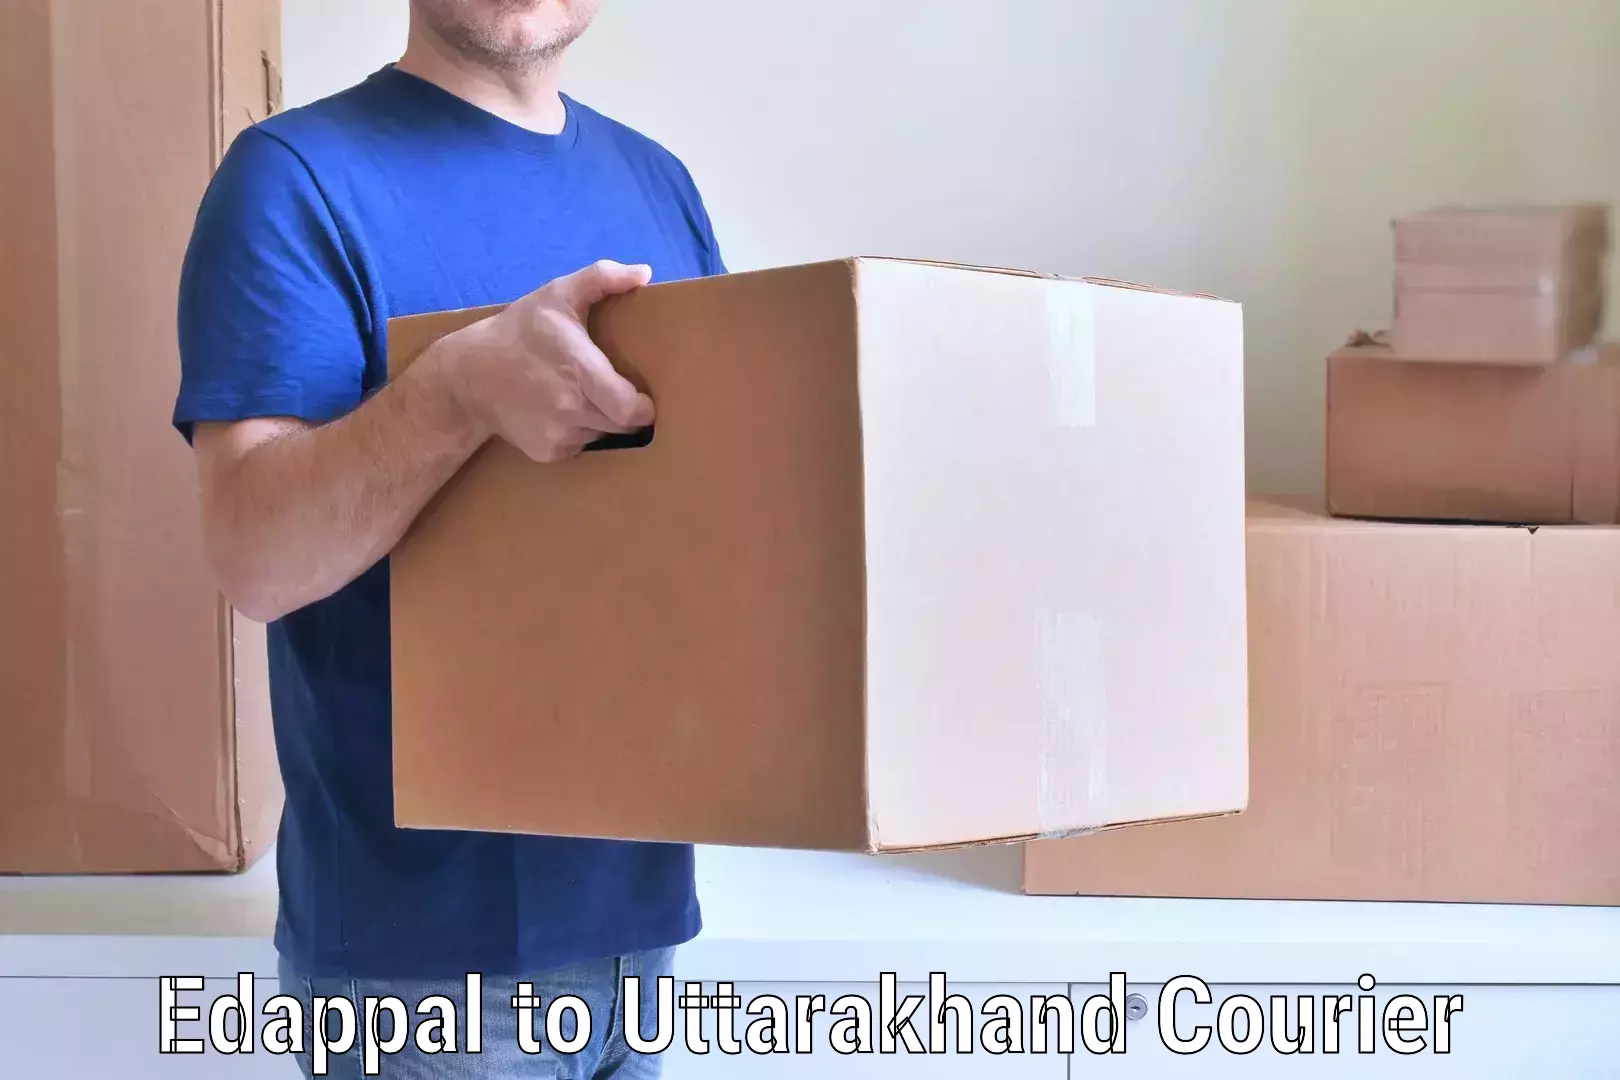 Furniture moving experts Edappal to Uttarakhand